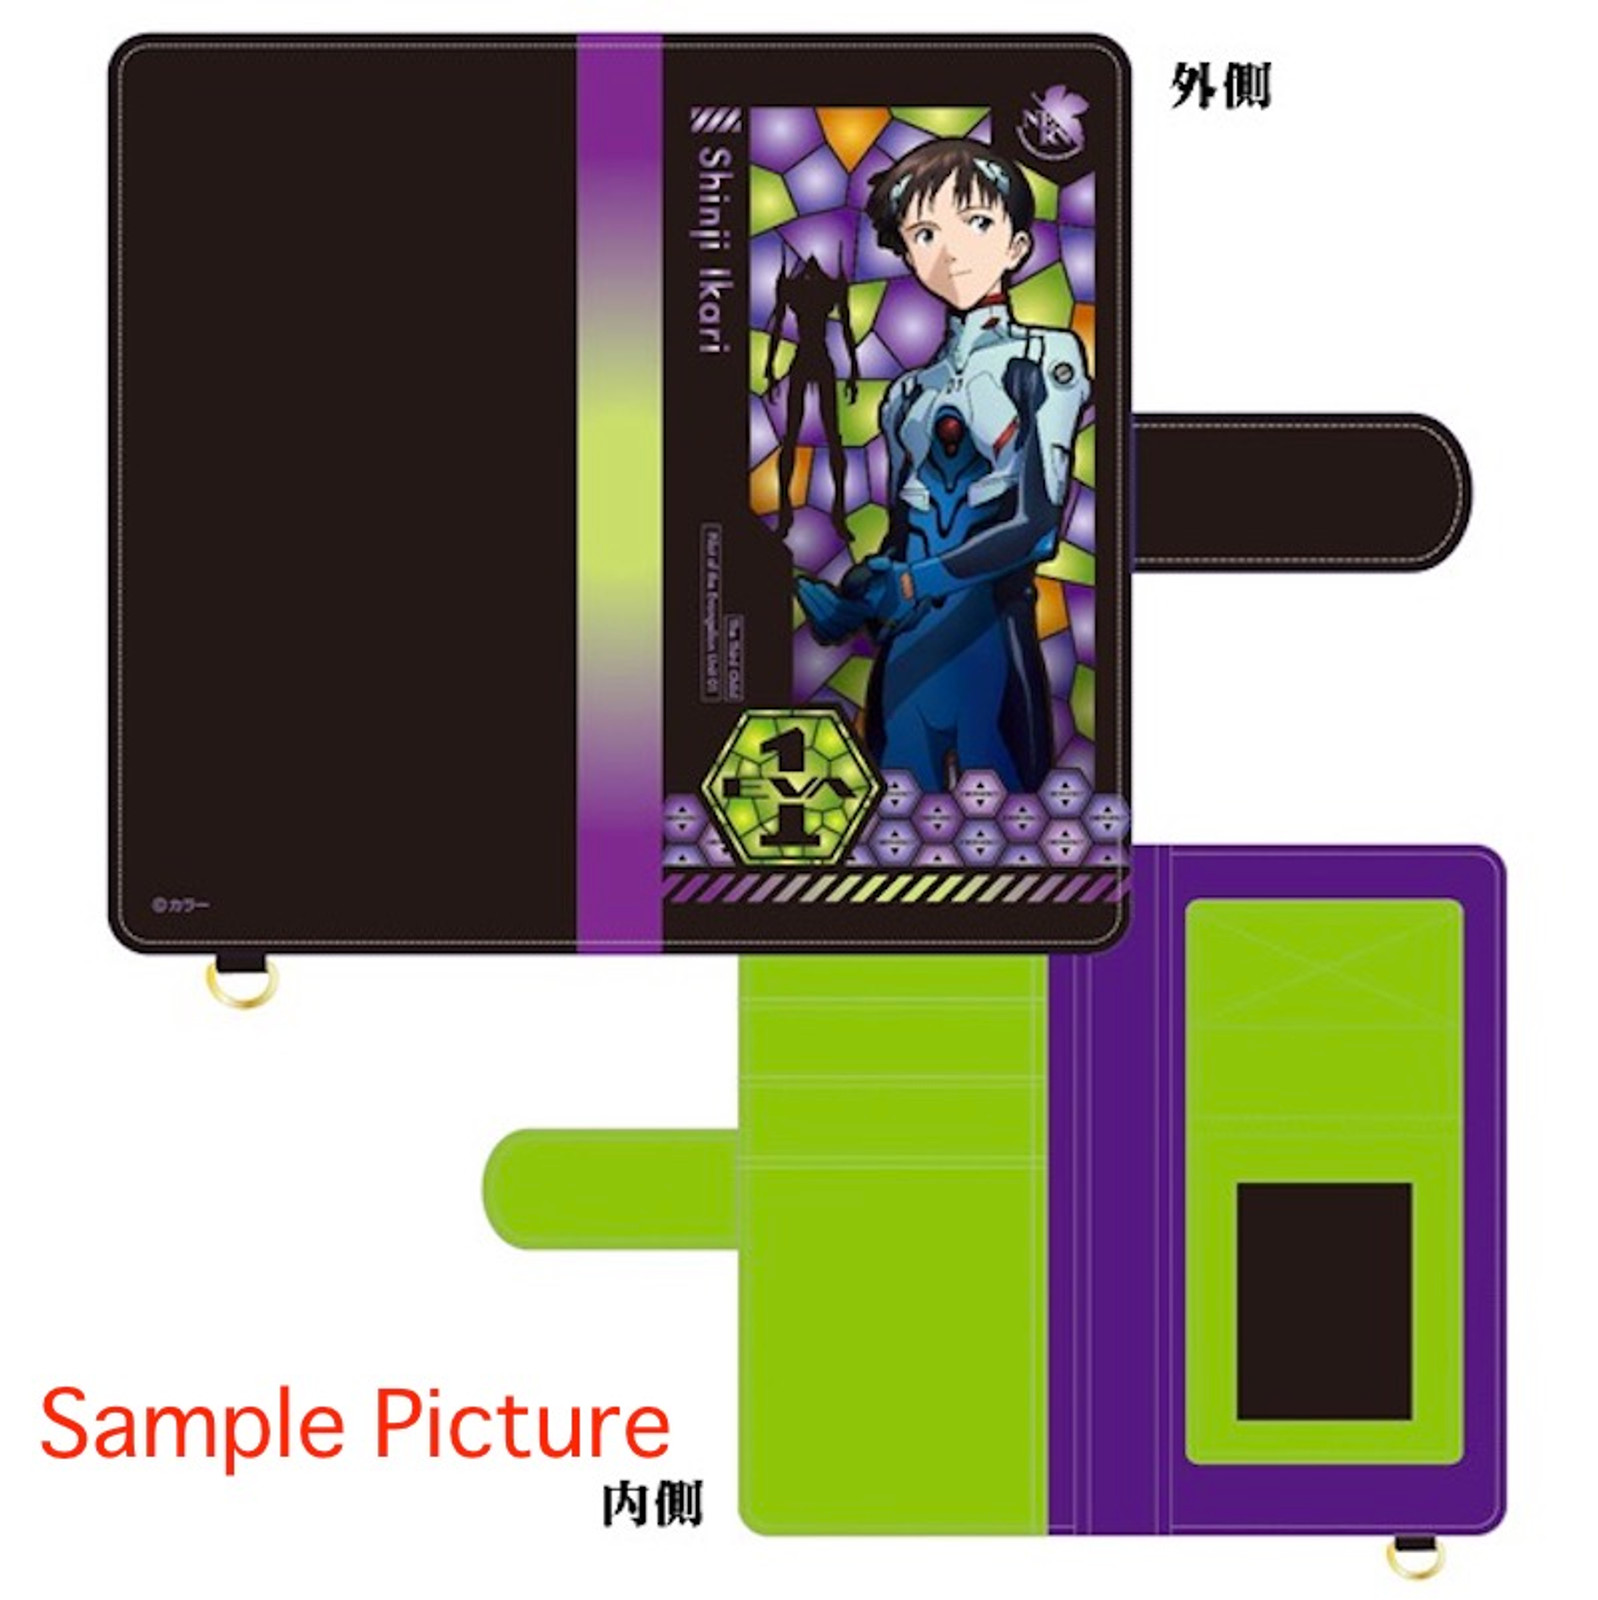 Evangelion Shinji Ikari Stained glass pattern Smart Phone Flip Cover BANDAI